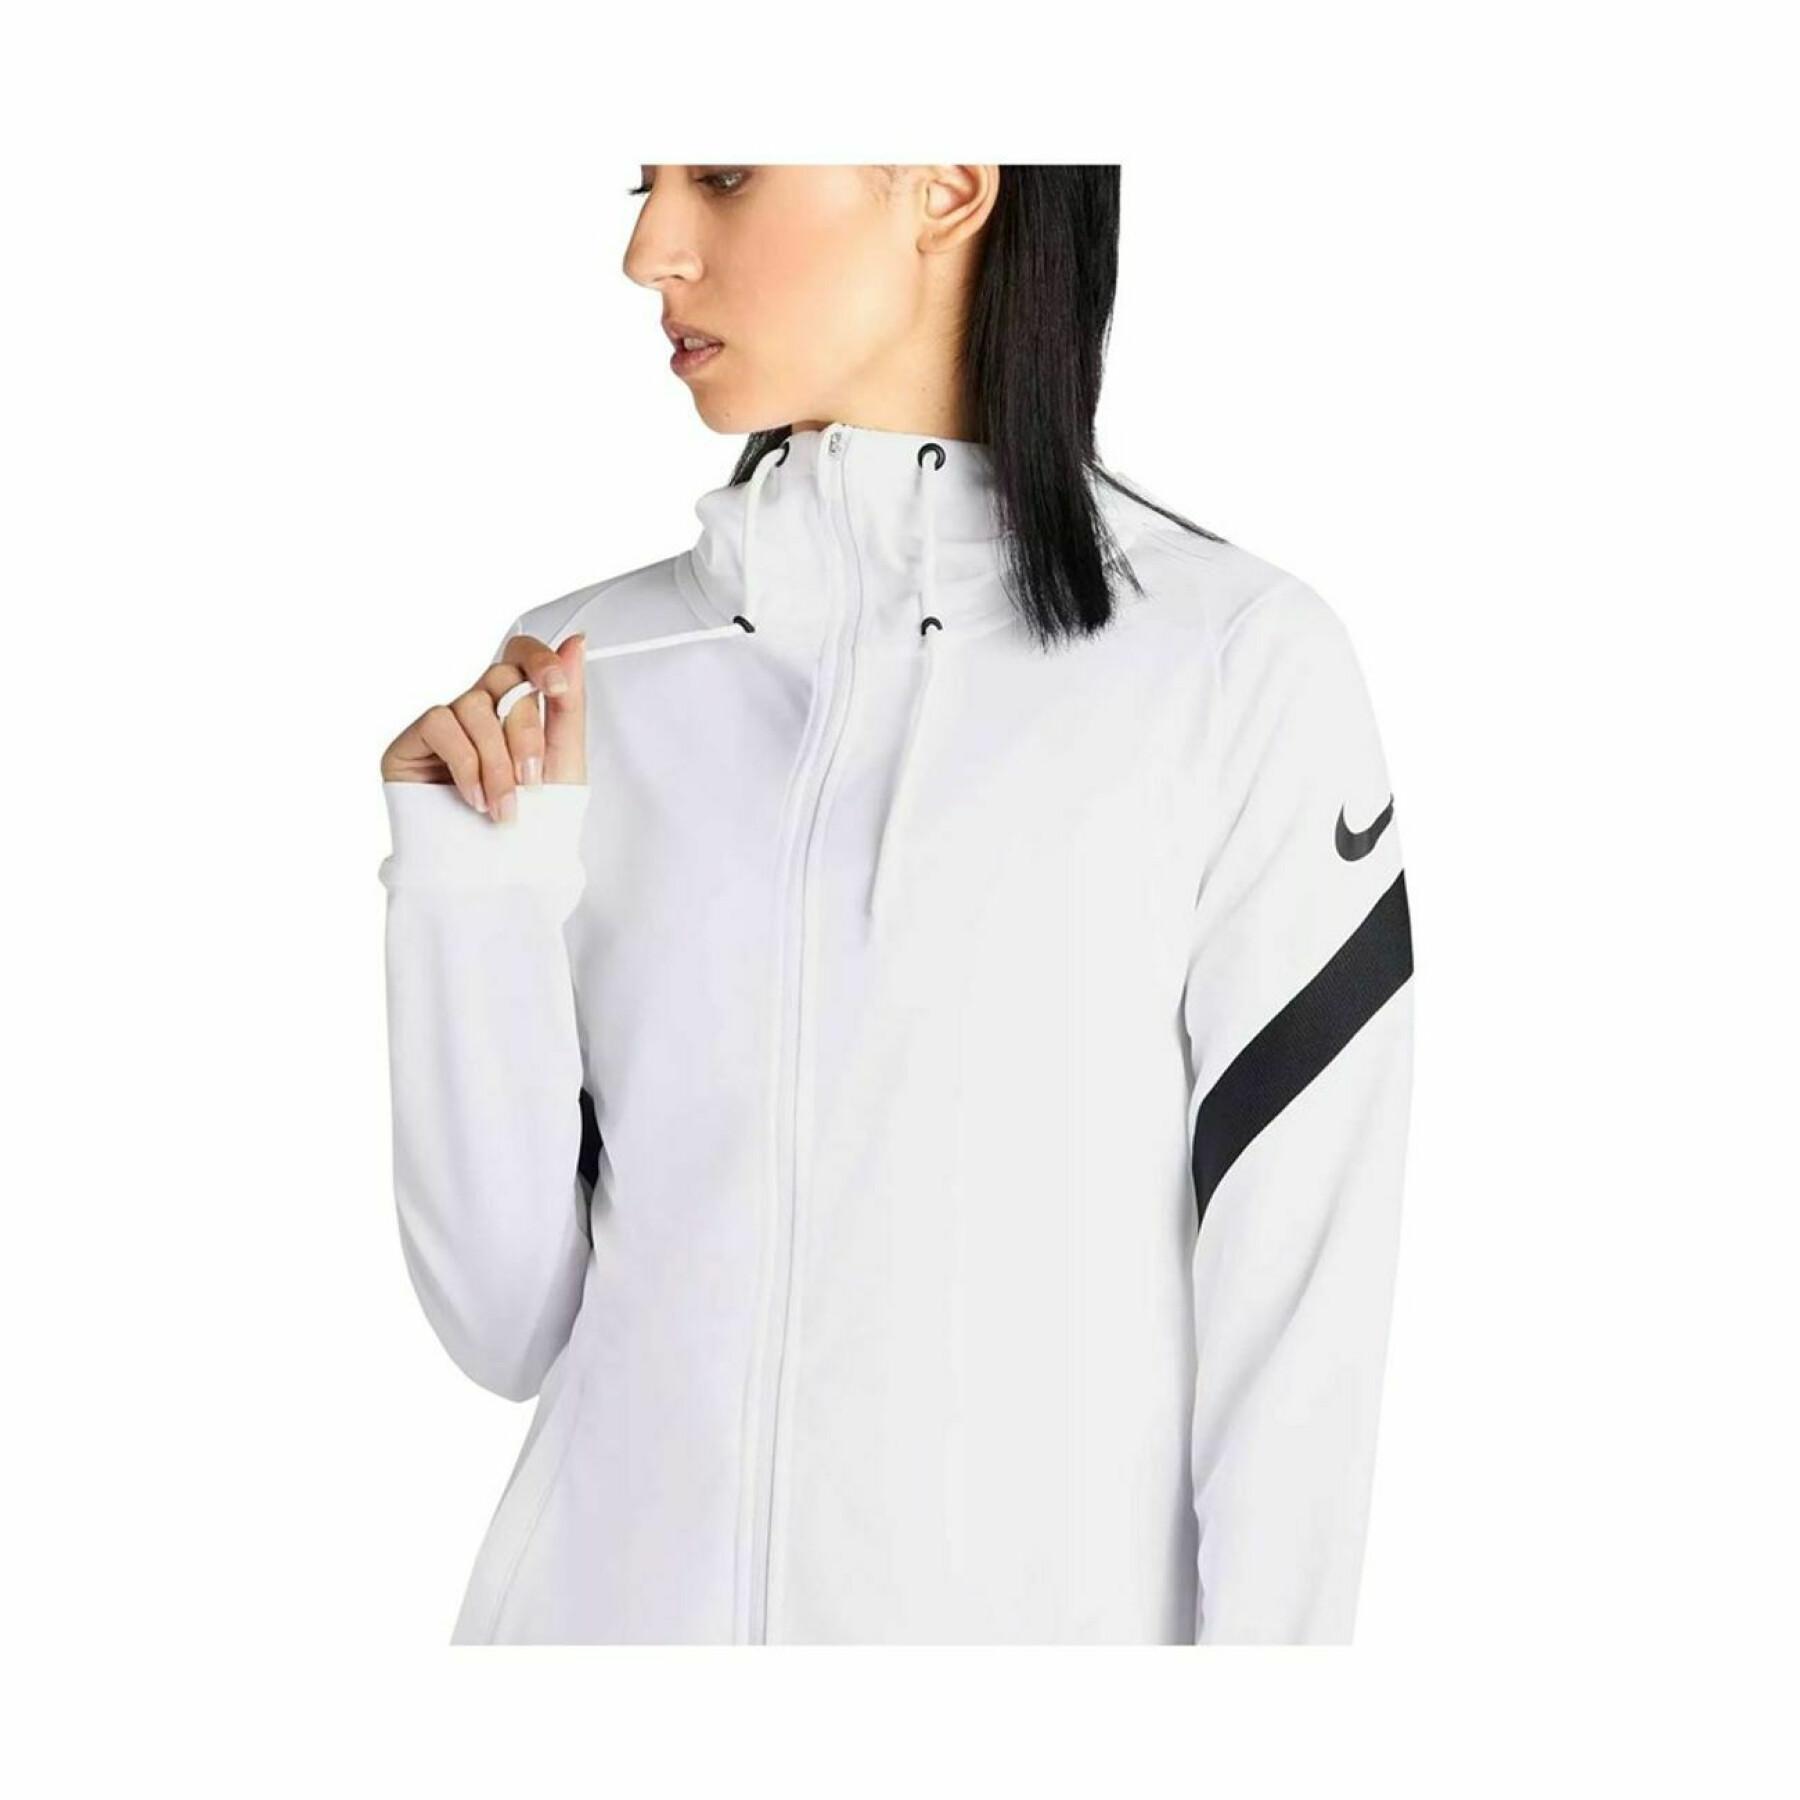 Damen-Sweatshirt Nike Dynamic Fit StrikeE21